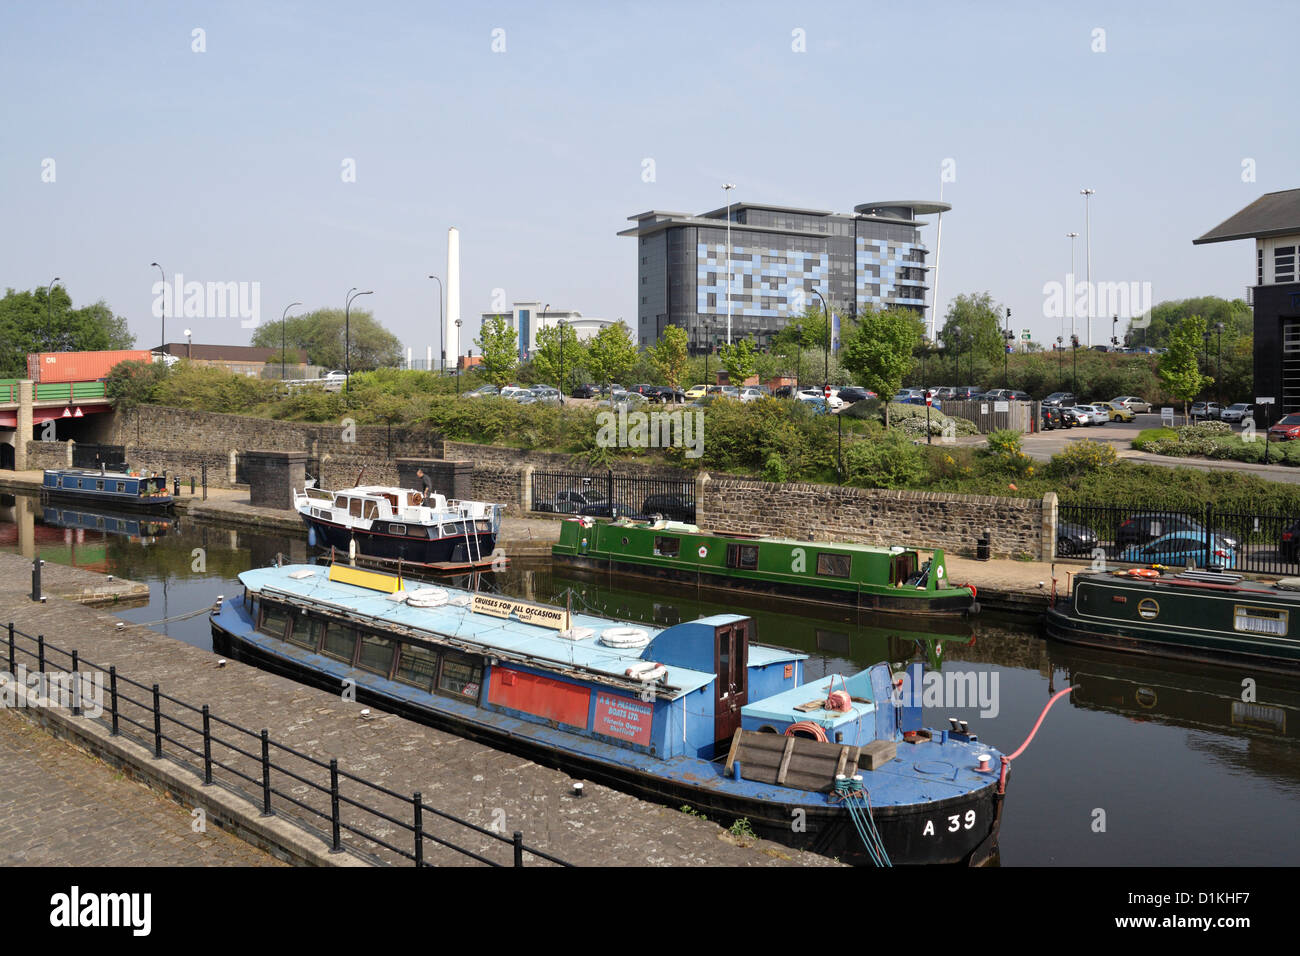 Kanalschiffe und schmale Boote, die auf dem Sheffield Tinsley Kanal, Victoria Quays Sheffield England, britischen Wasserstraßen festgemacht wurden Stockfoto